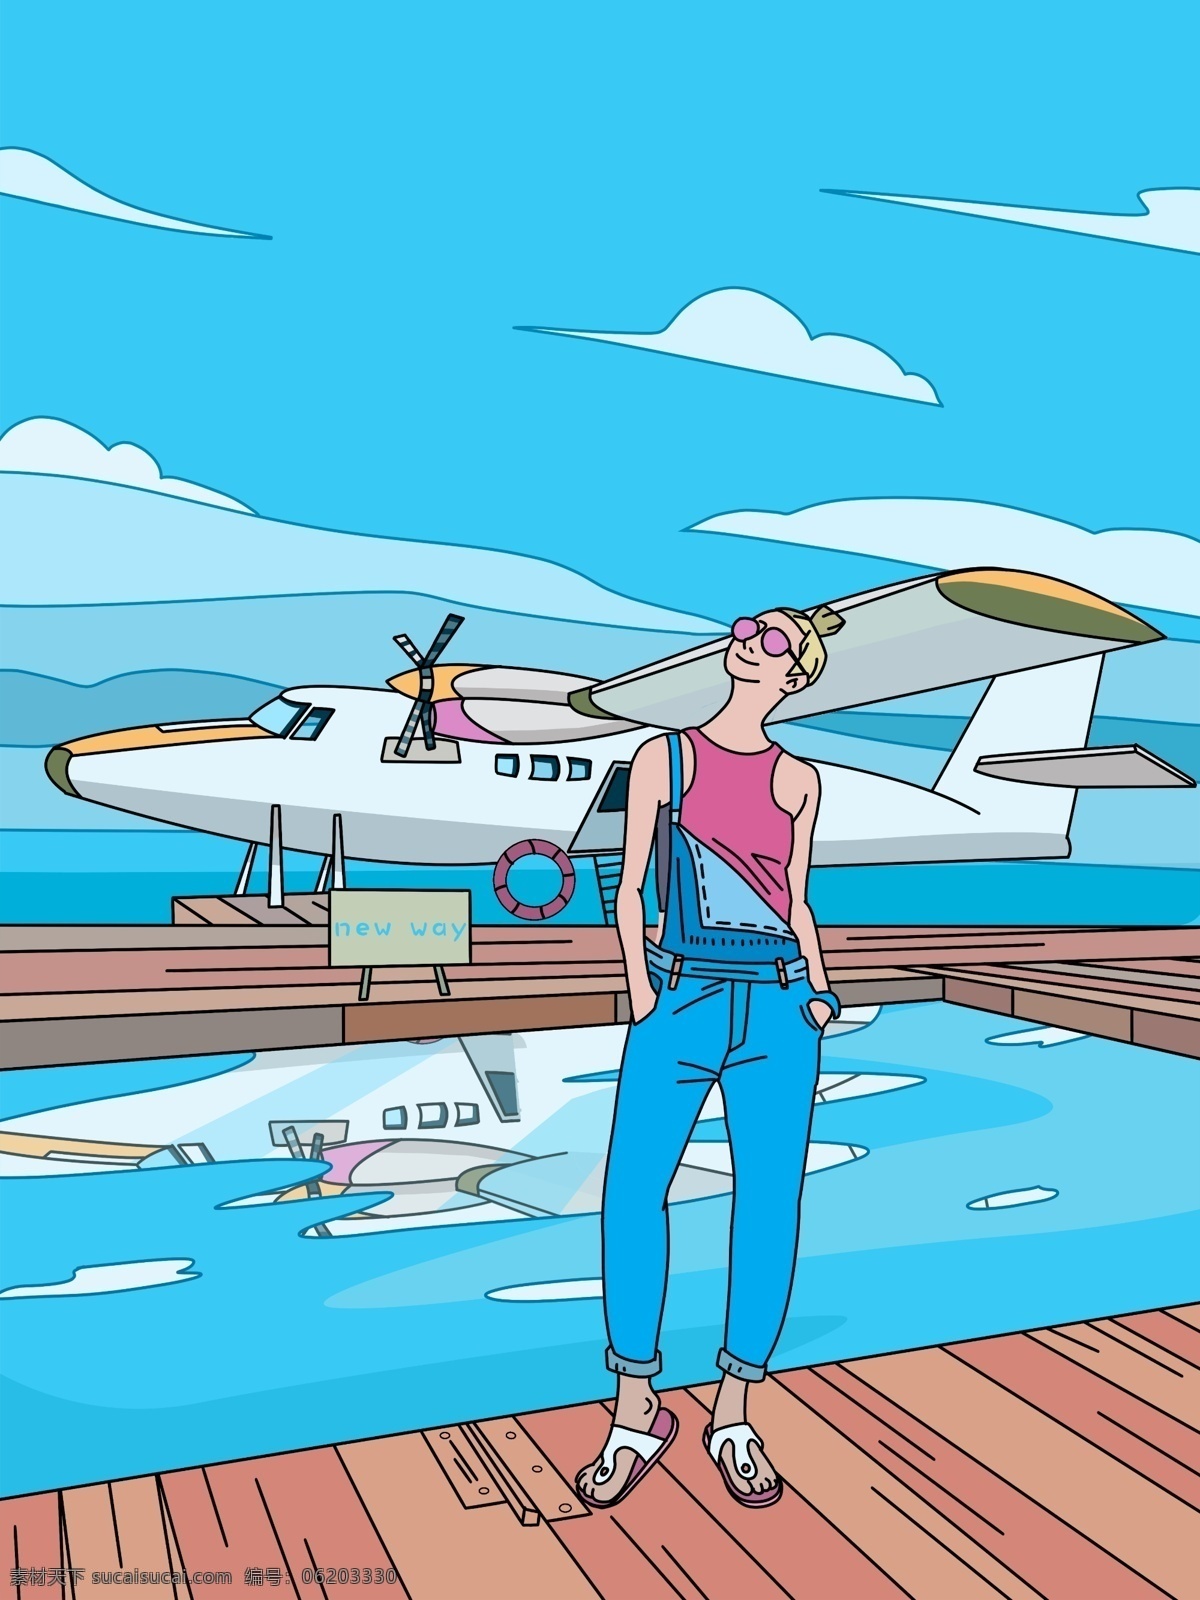 假日 旅行 私人 飞机 女孩 原创 商业插画 壁纸海报 海水 蓝天 描边风格 小清新 扁平